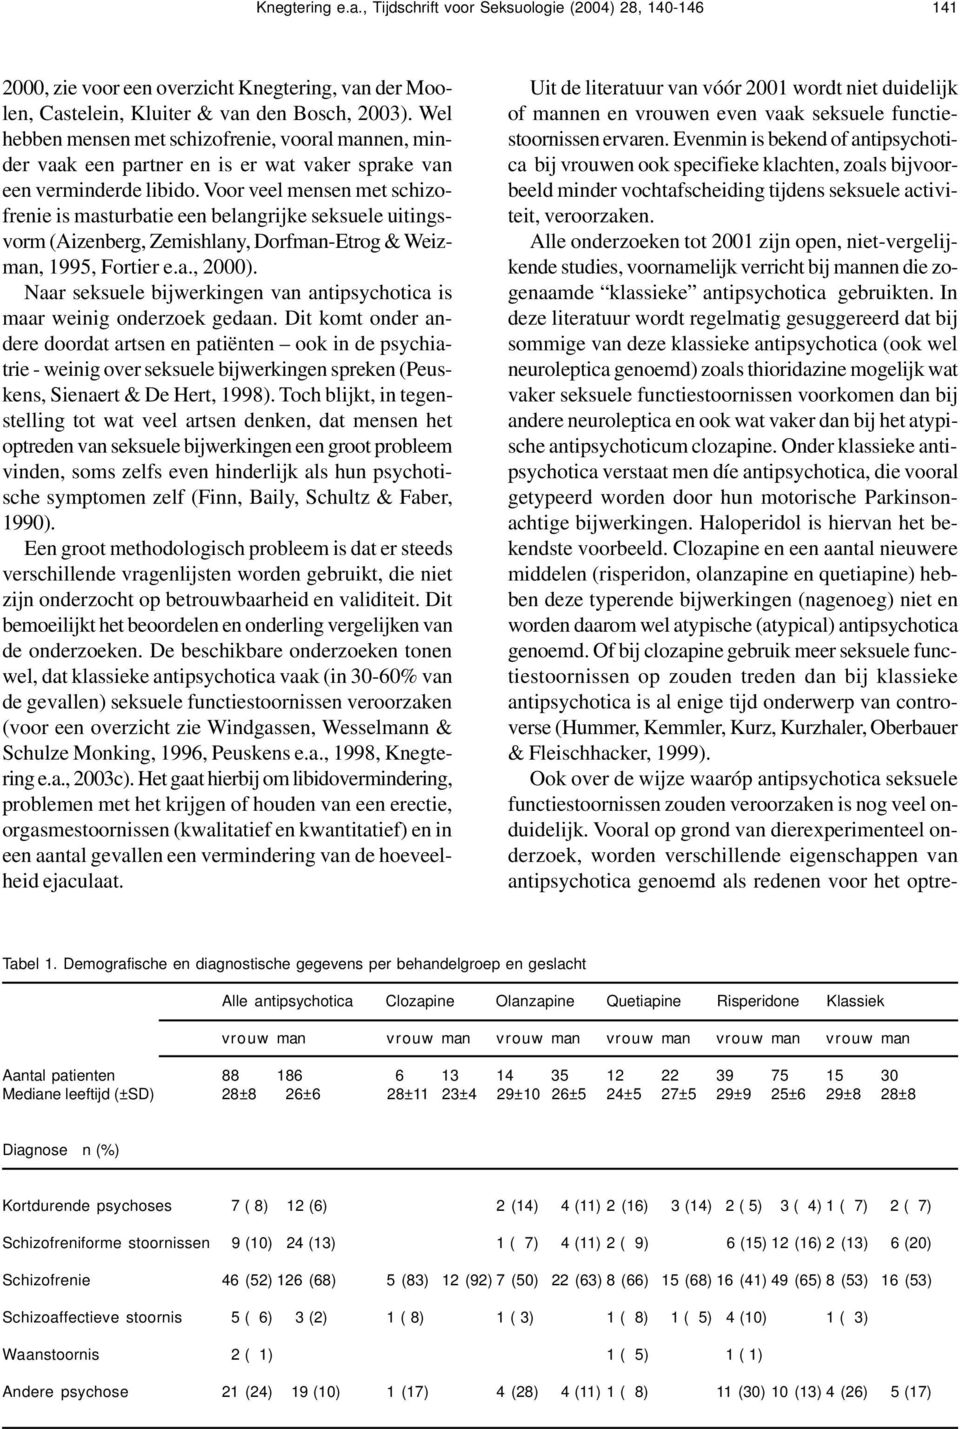 Voor veel mensen met schizofrenie is masturbatie een belangrijke seksuele uitingsvorm (Aizenberg, Zemishlany, Dorfman-Etrog & Weizman, 1995, Fortier e.a., 2000).